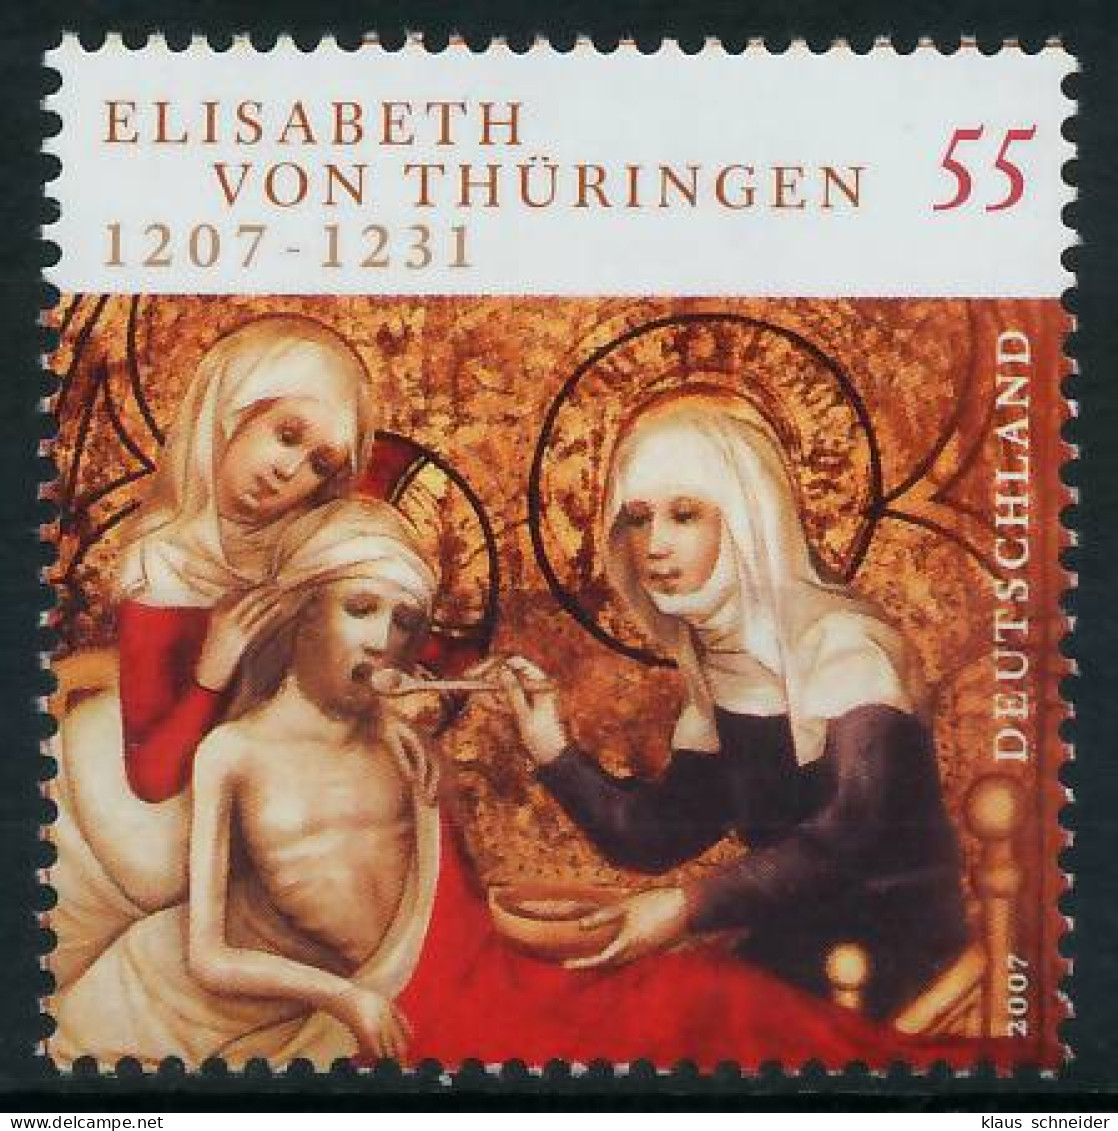 BRD BUND 2007 Nr 2628 Postfrisch SE16416 - Unused Stamps